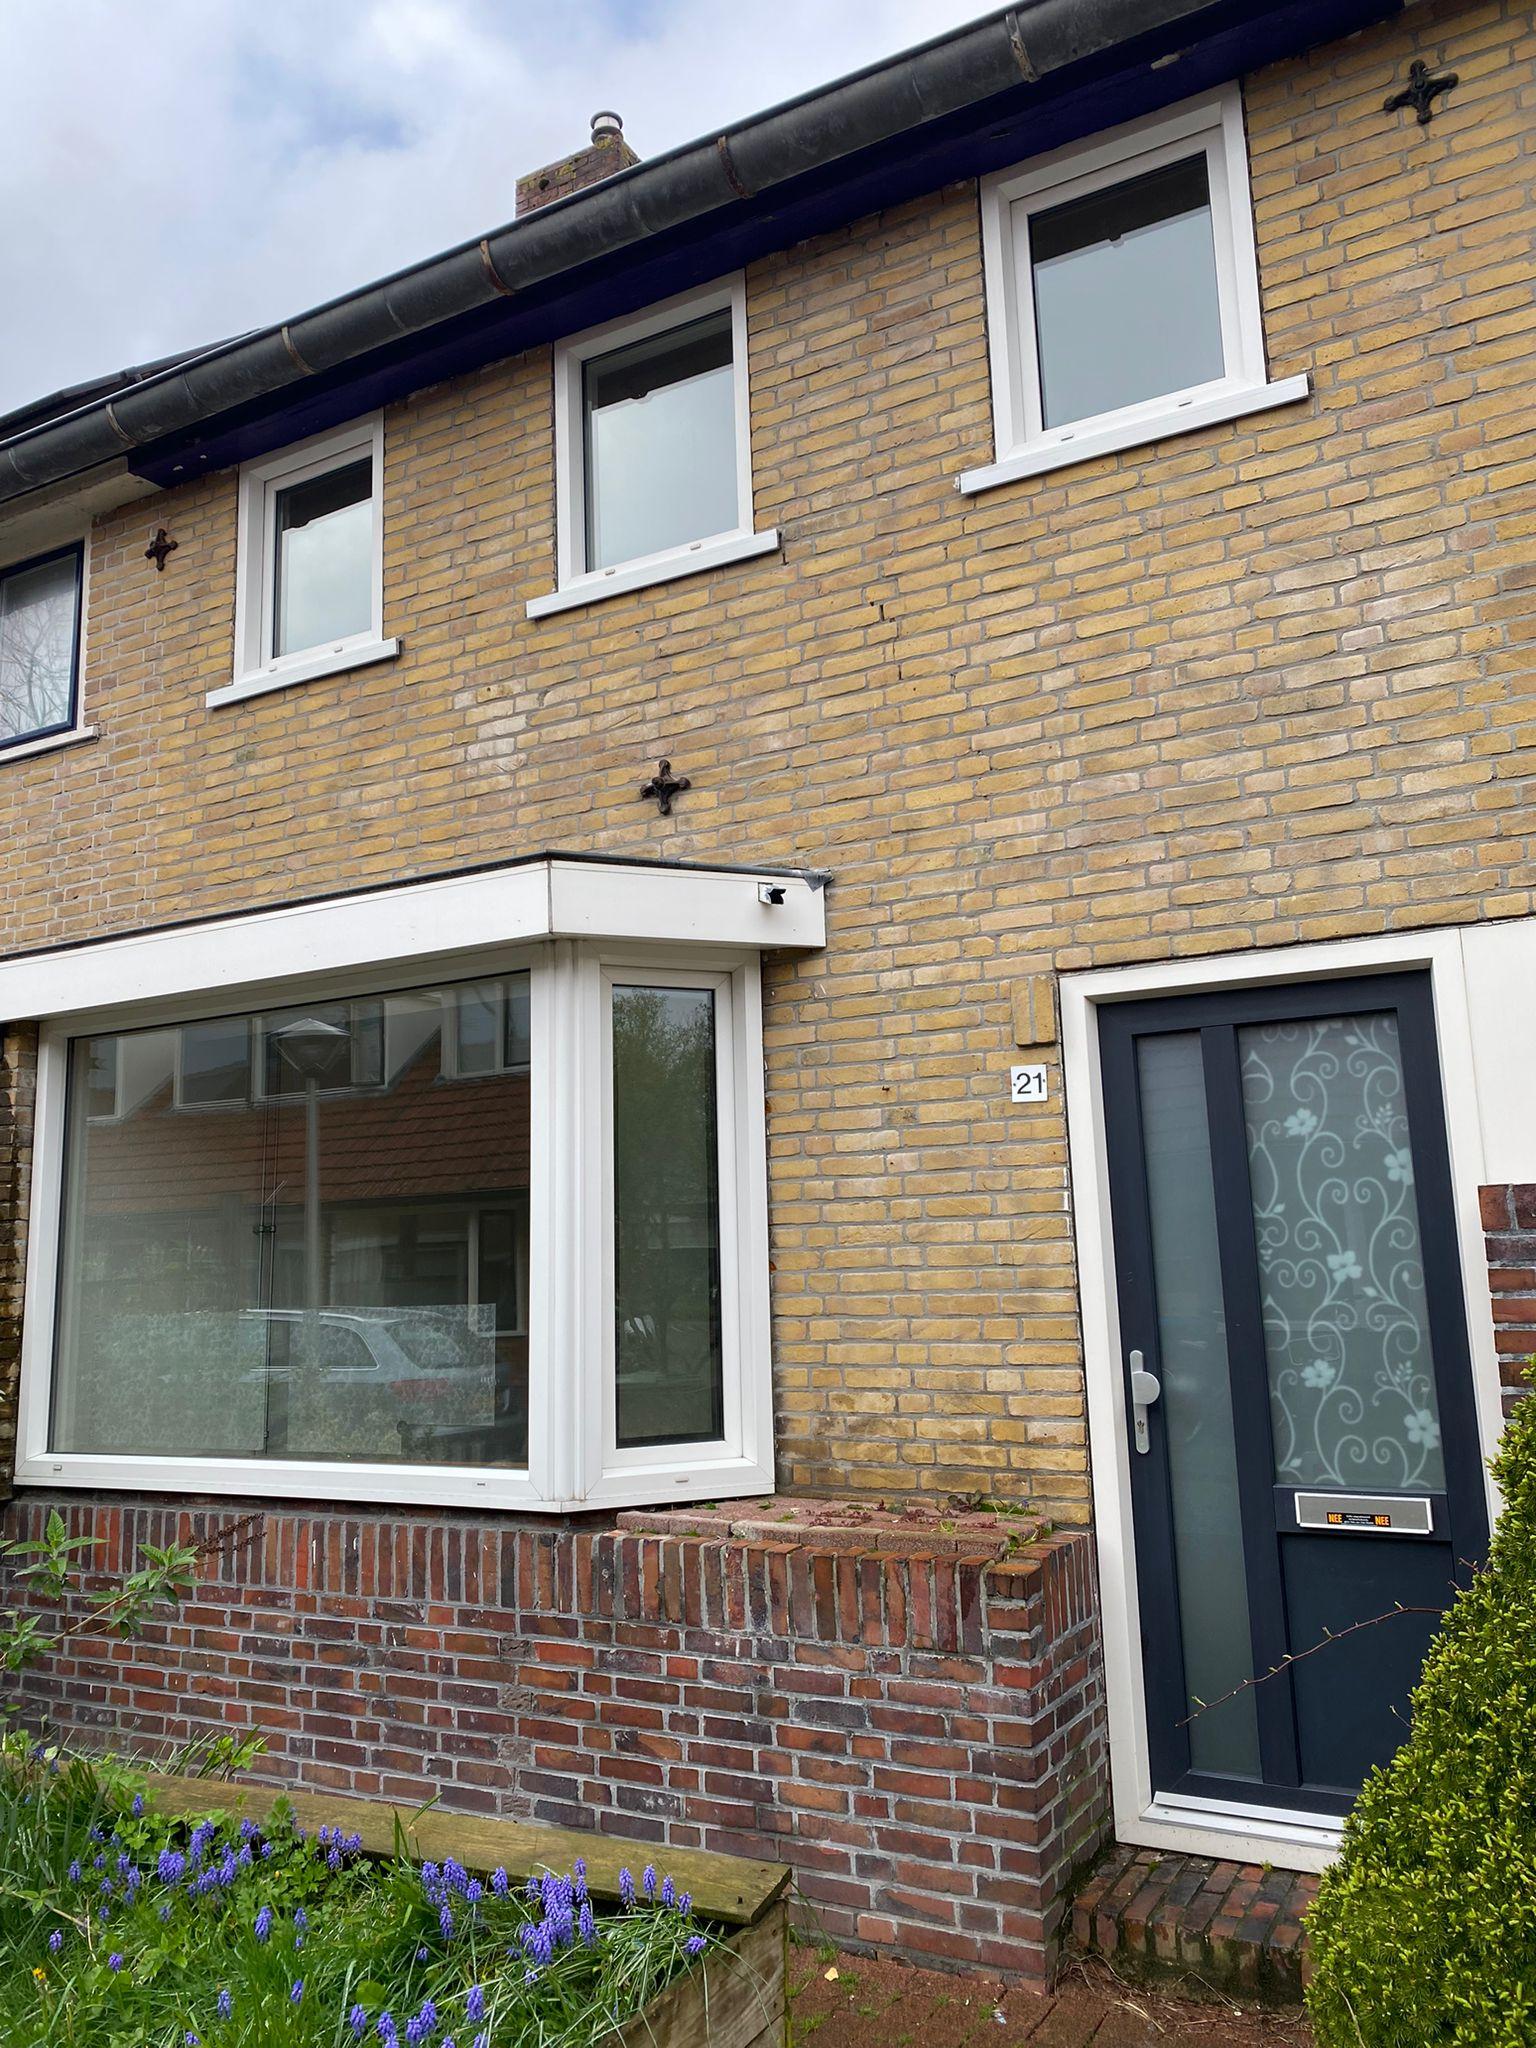 Bekijk foto 1/22 van house in Leeuwarden